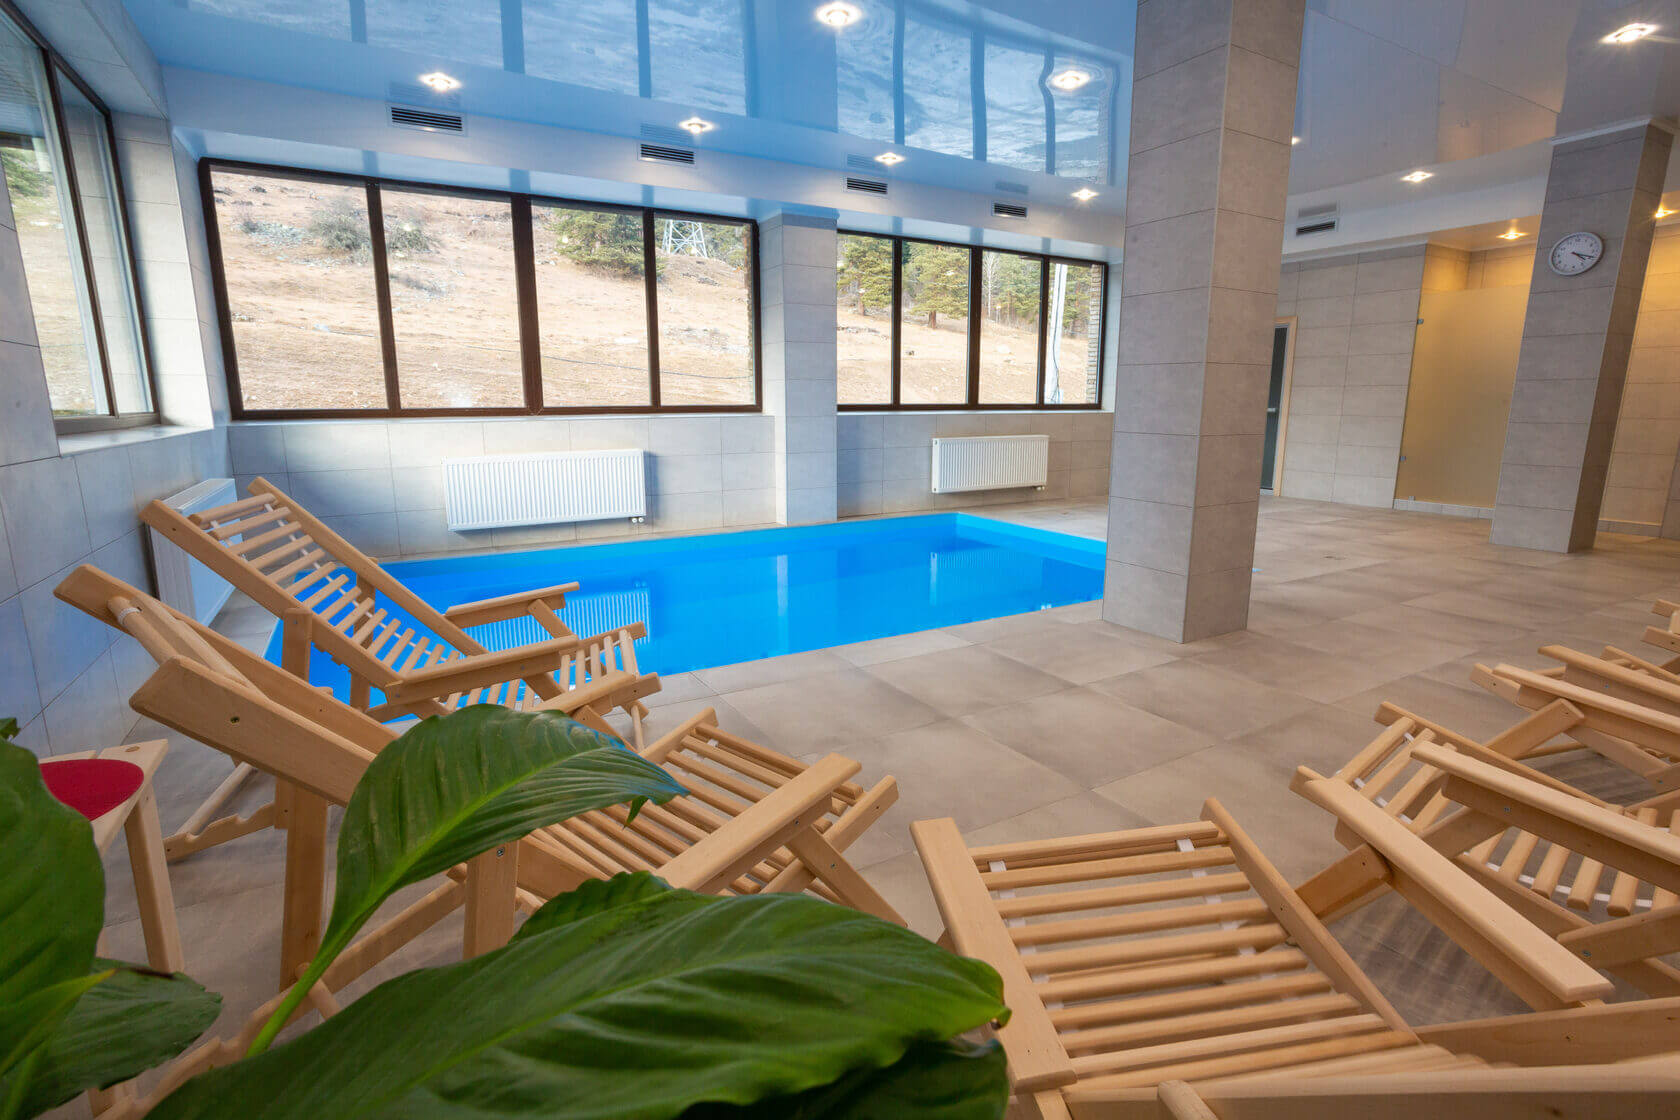 Зона отдыха: небольшой бассейн и деревянные шезлонги.